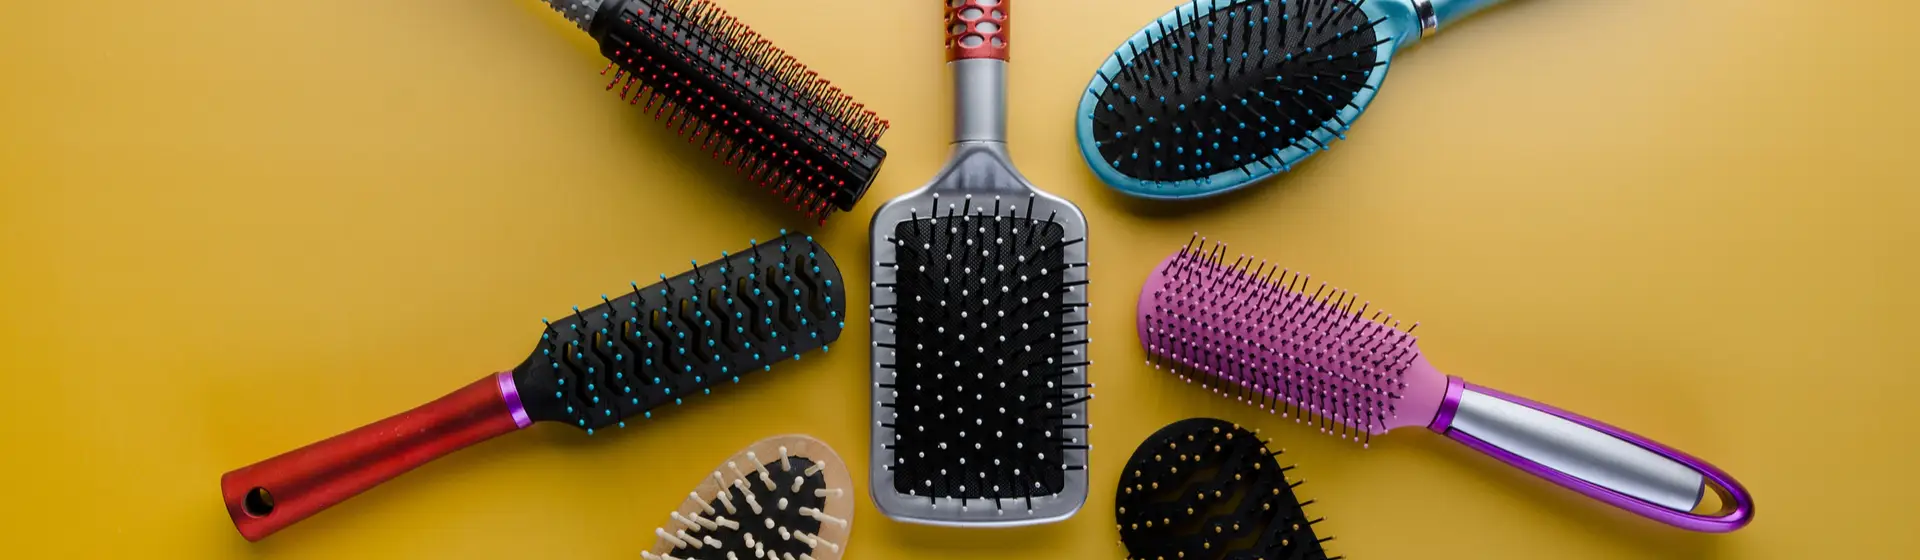 Saiba qual é a melhor escova para cabelo fino e liso: Tangle Teezer